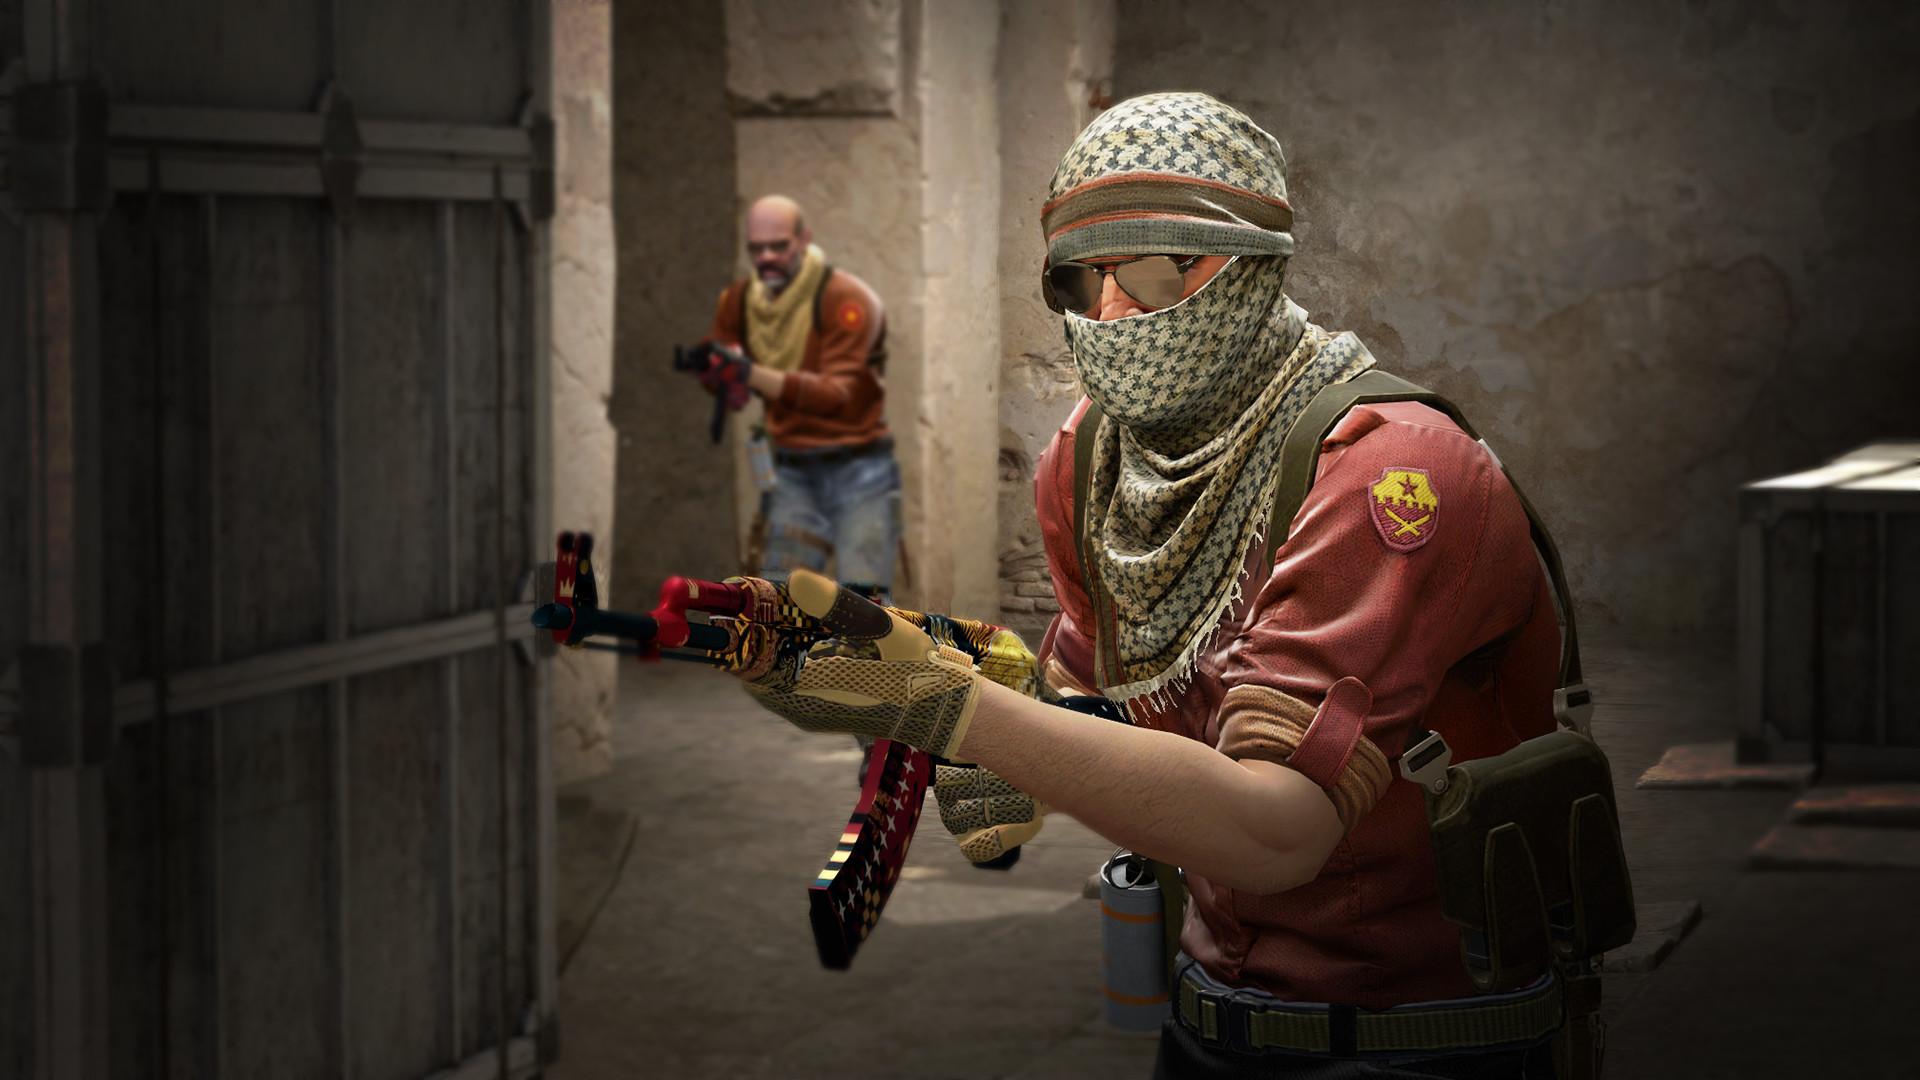 Torneio brasileiro de CS:GO - Counter Strike Global Offensive acontece em junho, inscrições abertas